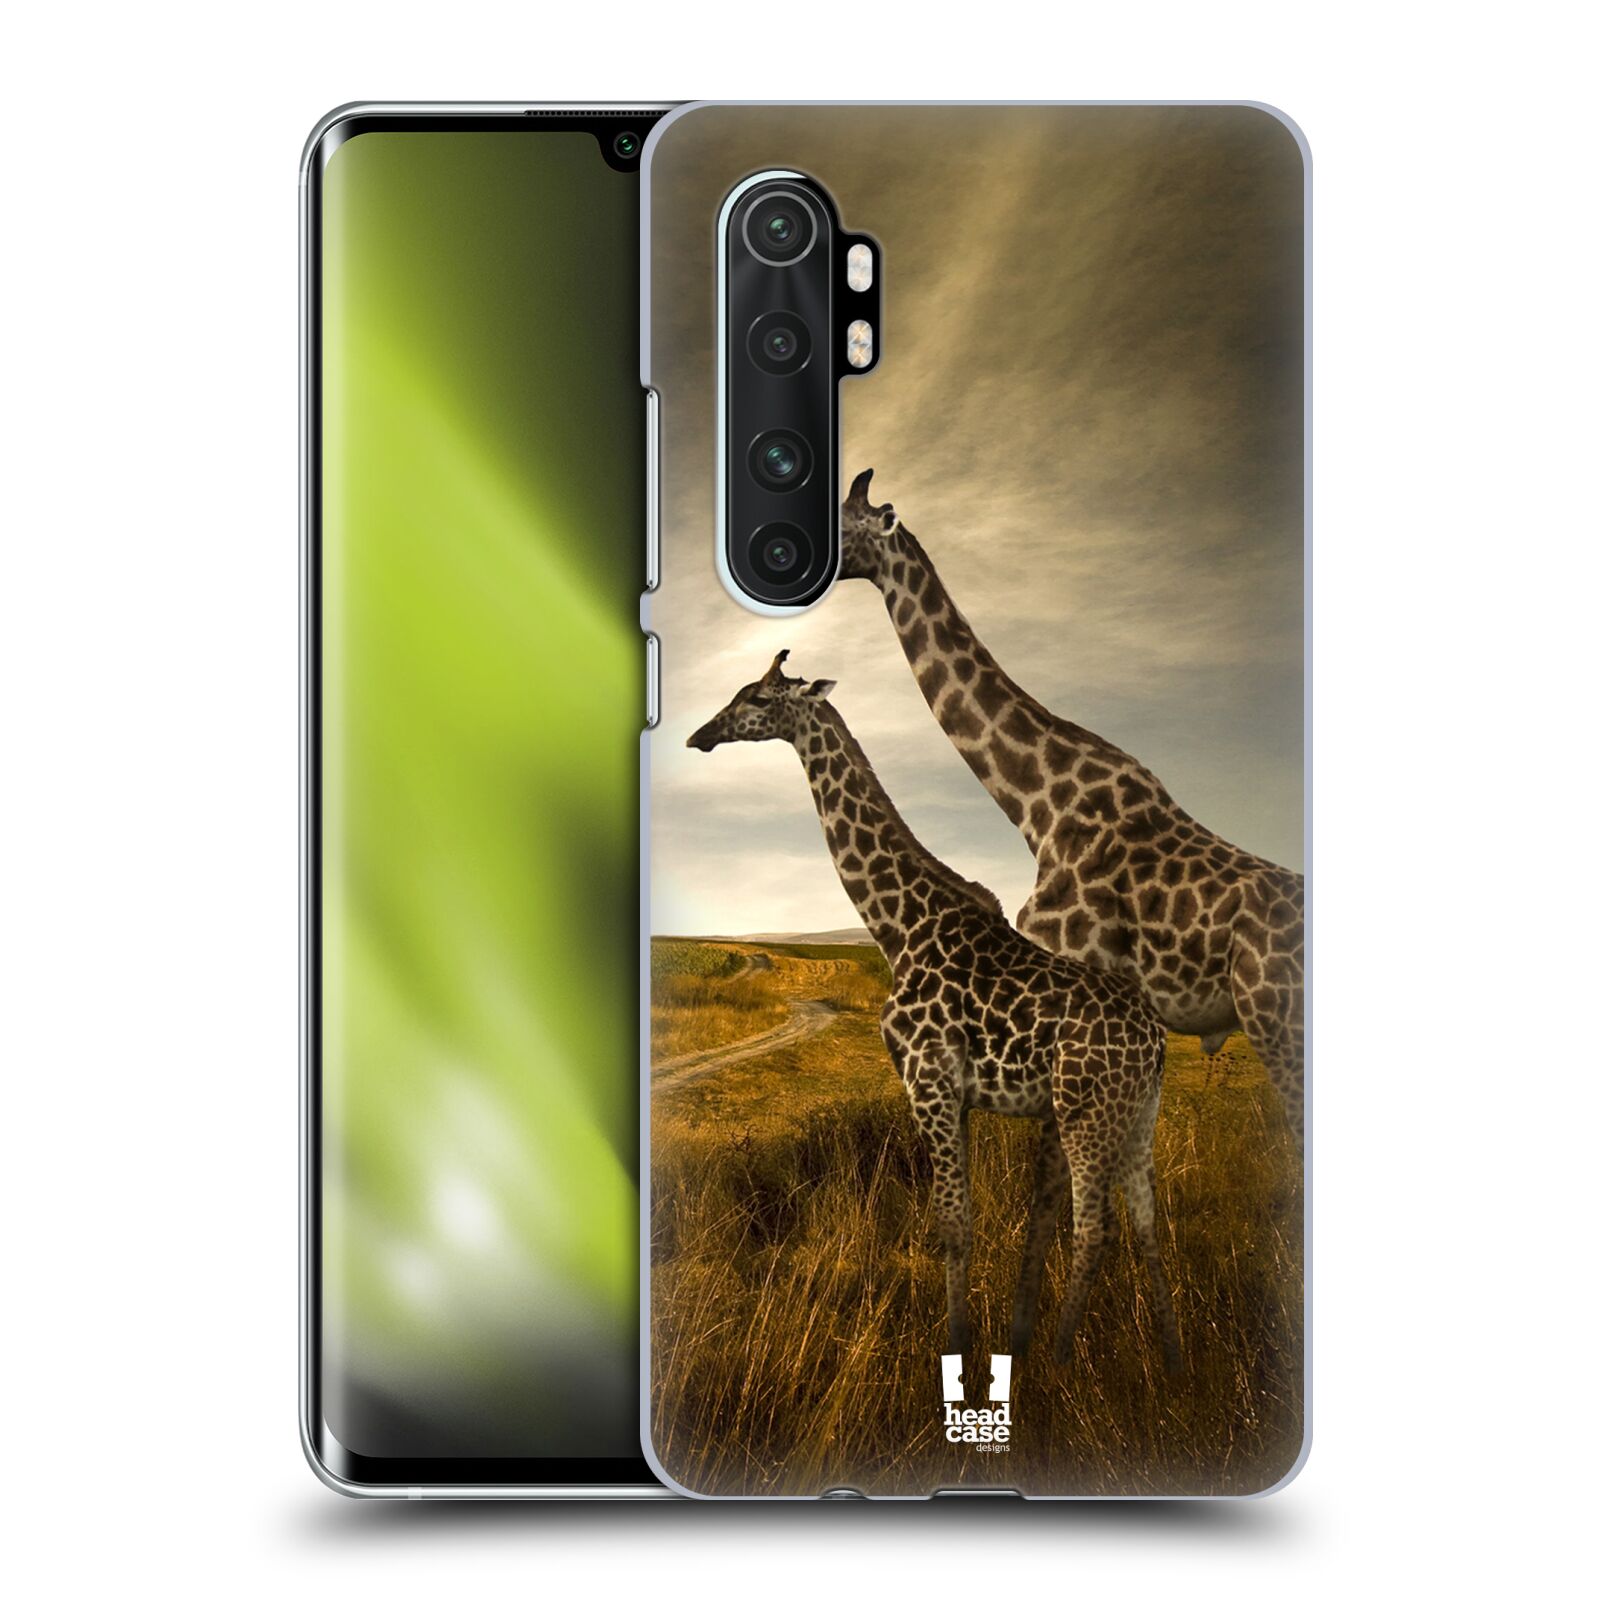 Zadní obal pro mobil Xiaomi Mi Note 10 LITE - HEAD CASE - Svět zvířat žirafy